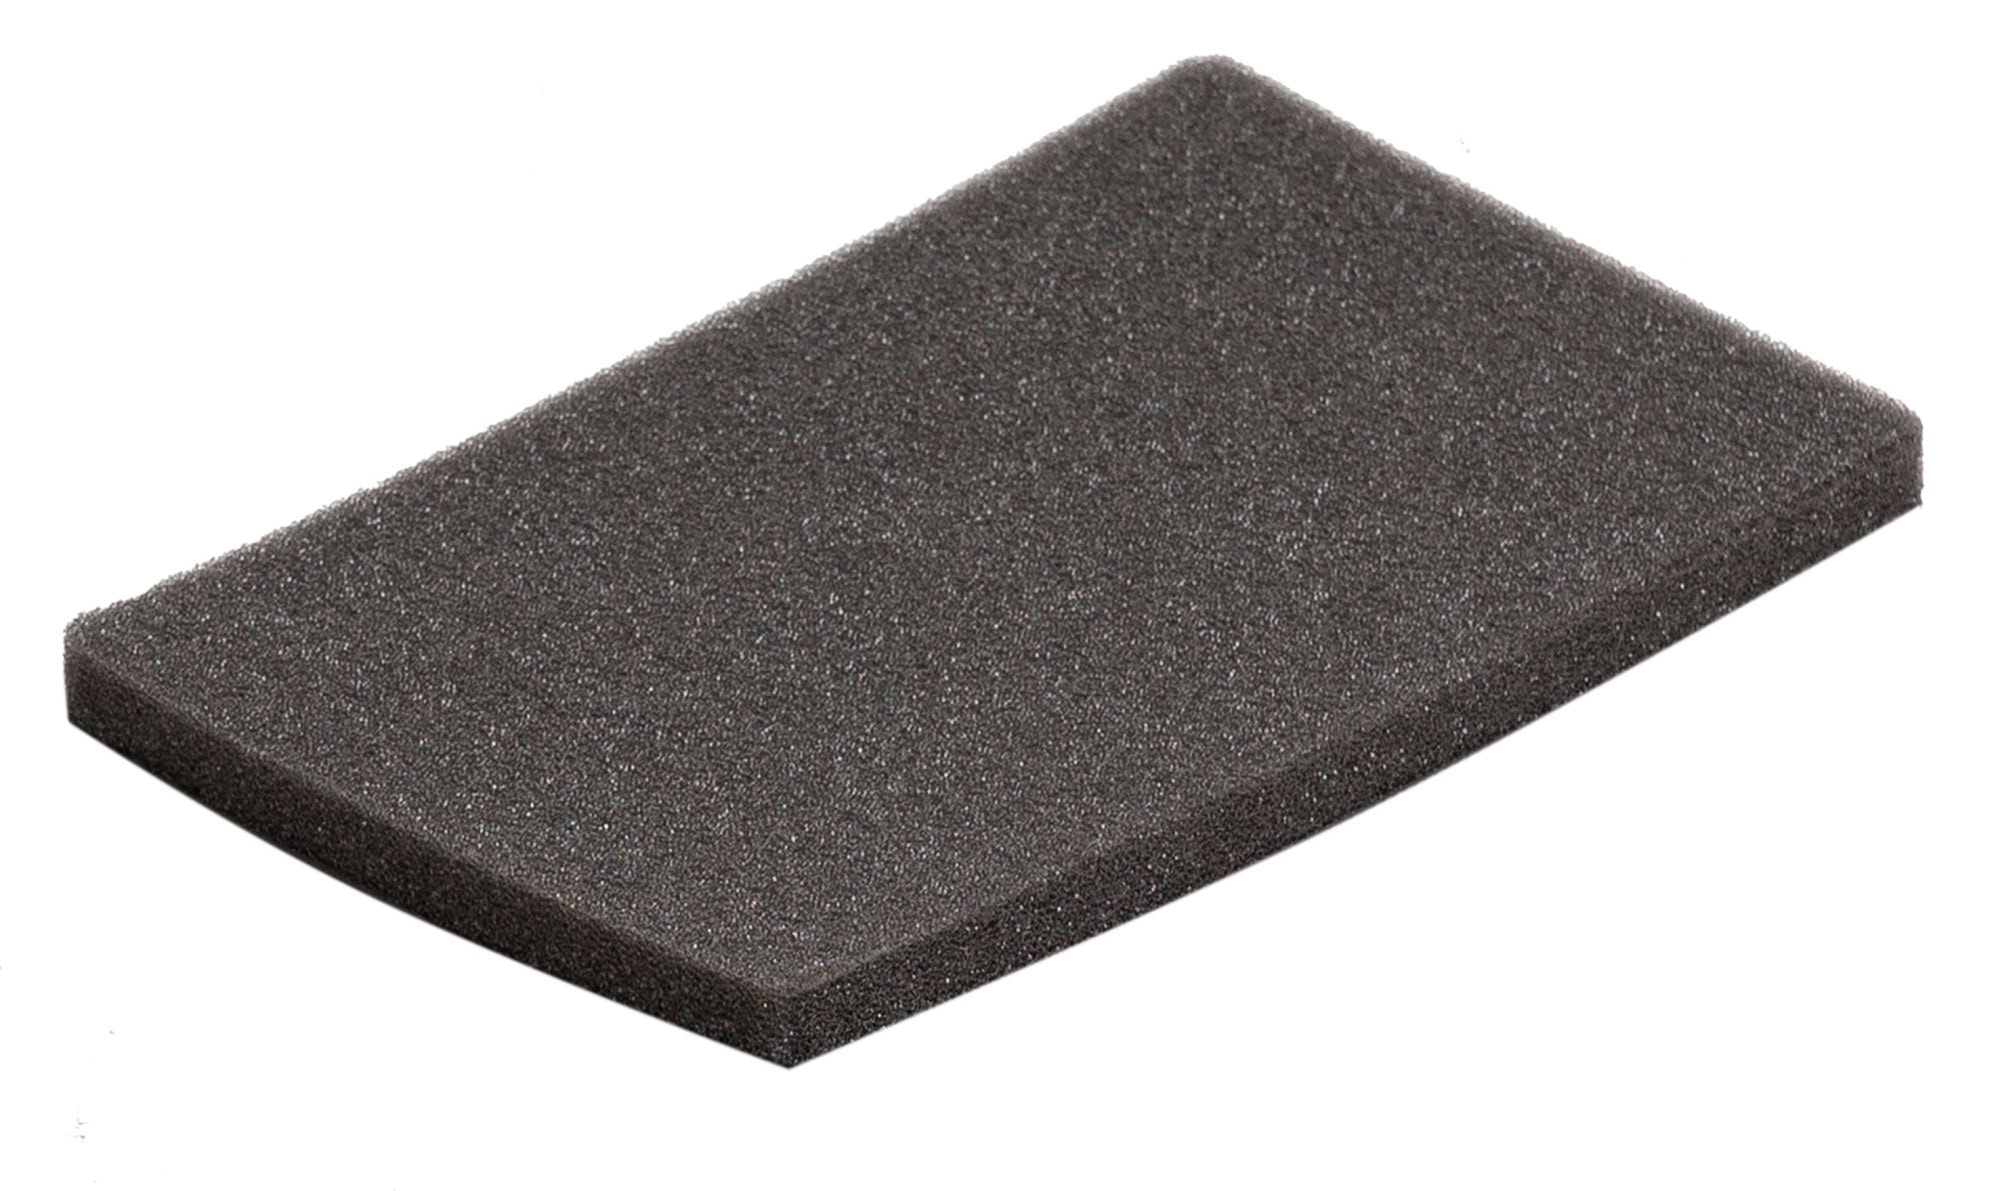 Mirka® Soft Handpad 74 mm x 122 mm 8299909111, 2 Stück pro Pack, für besseres Anpassen an Rundungen und unebenen Oberflächen